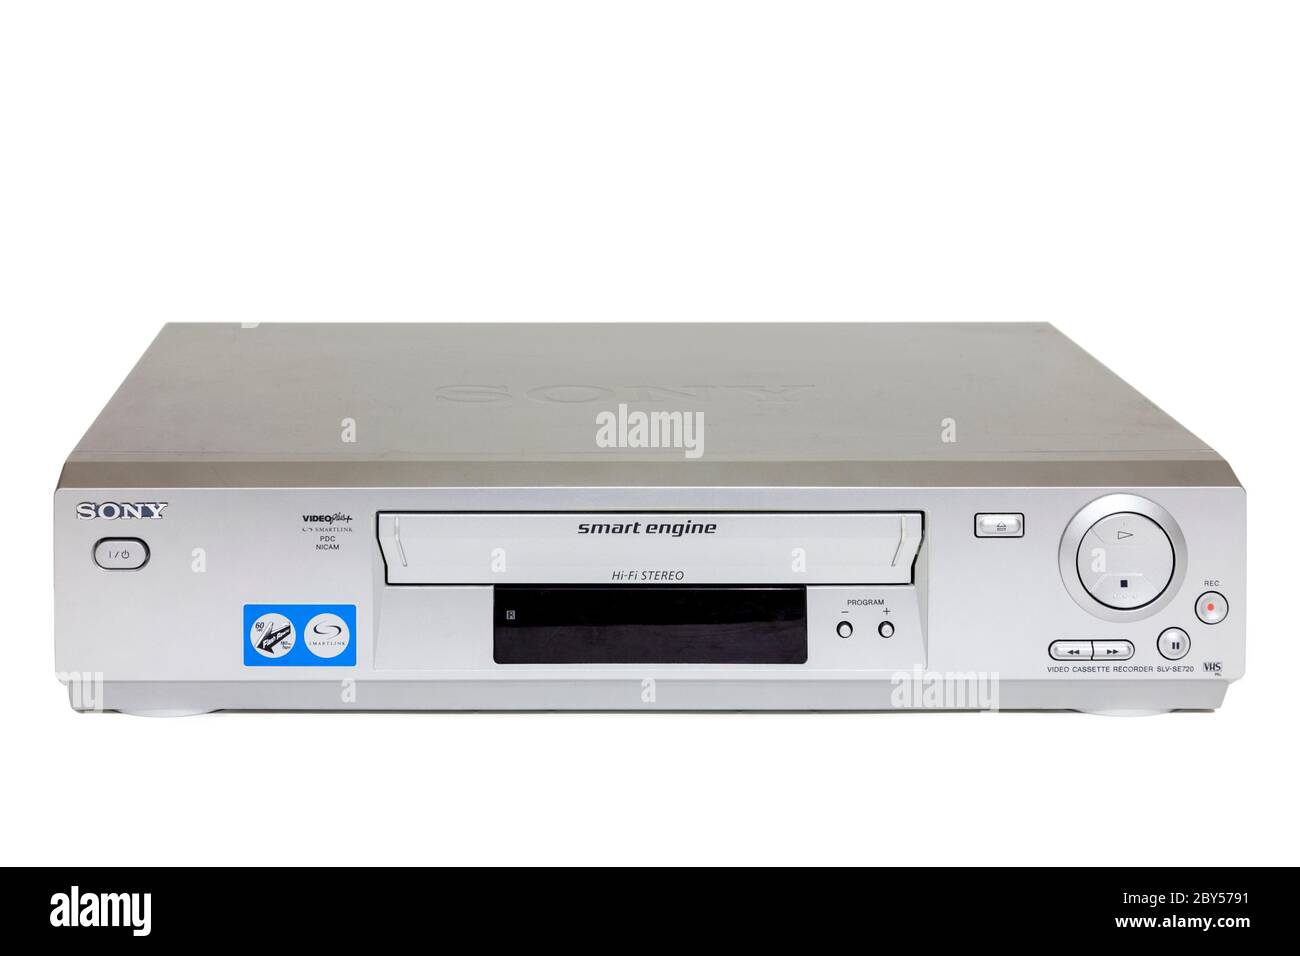 Videoregistratore Sony SLV-SE720, un modello successivo di videoregistratore in formato VHS con video Plus e stereo Nicam Foto Stock